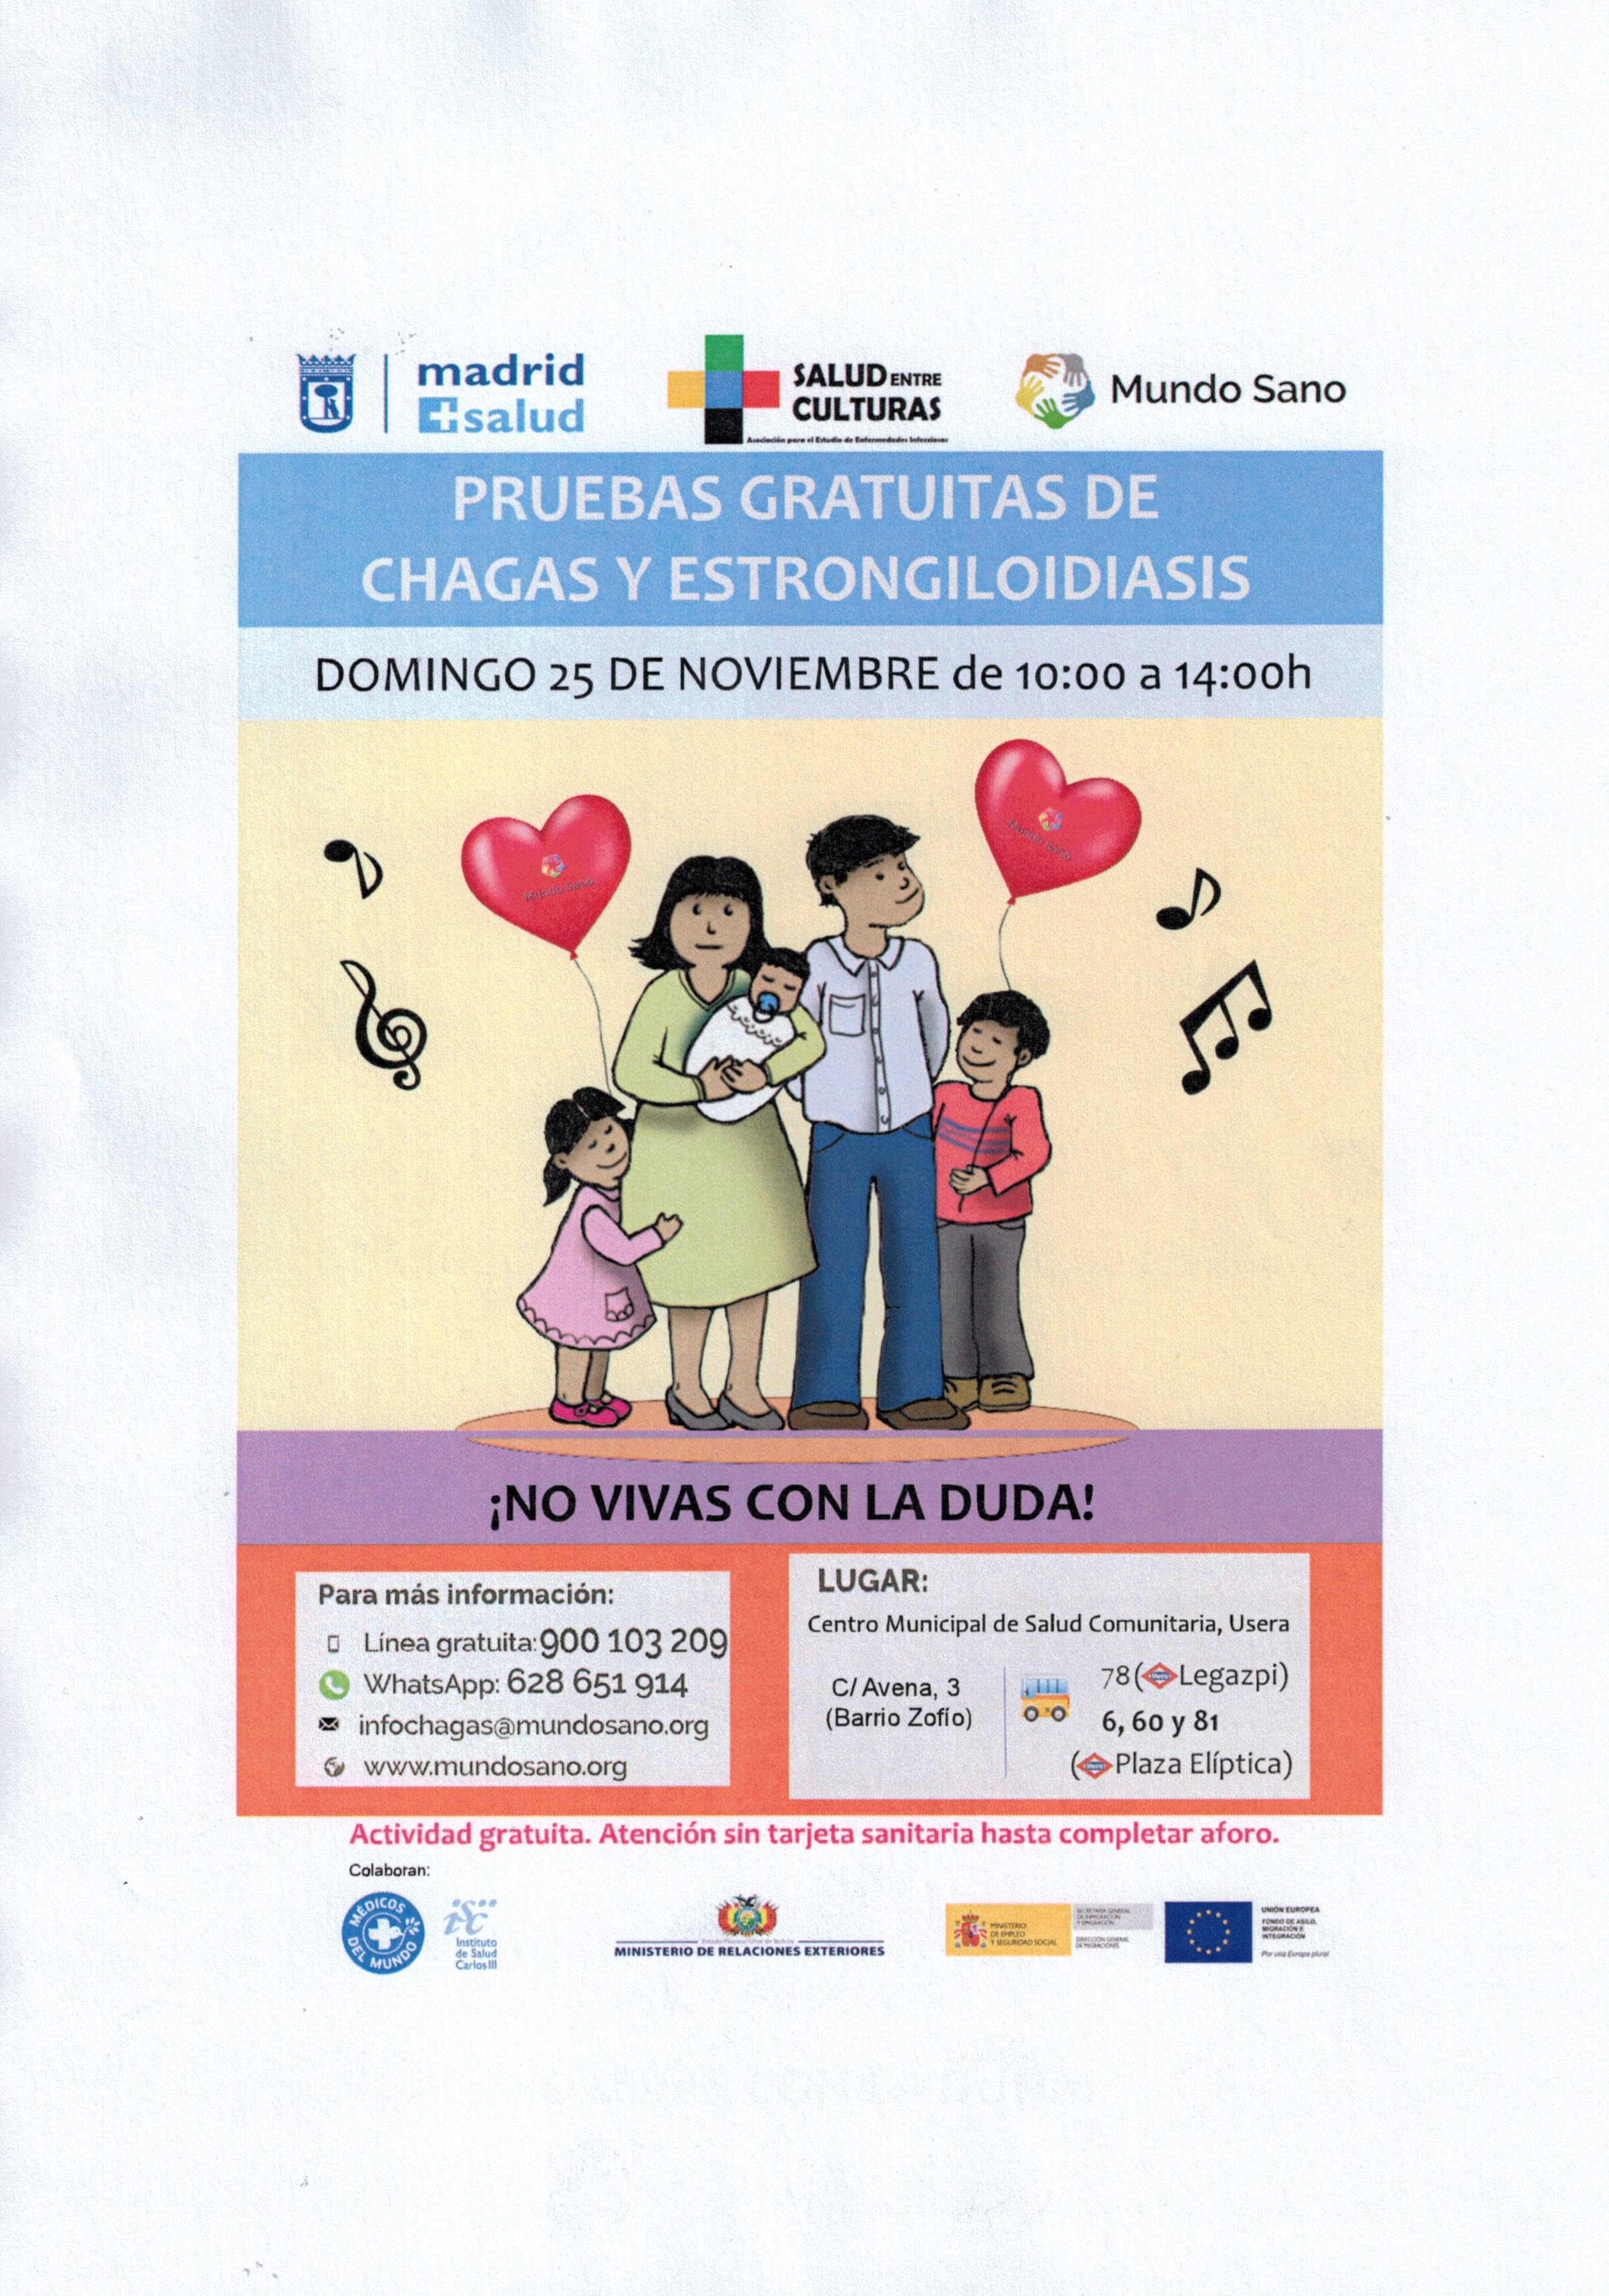 Campaña de información y diagnóstico de la Enfermedad de Chagas en Madrid.